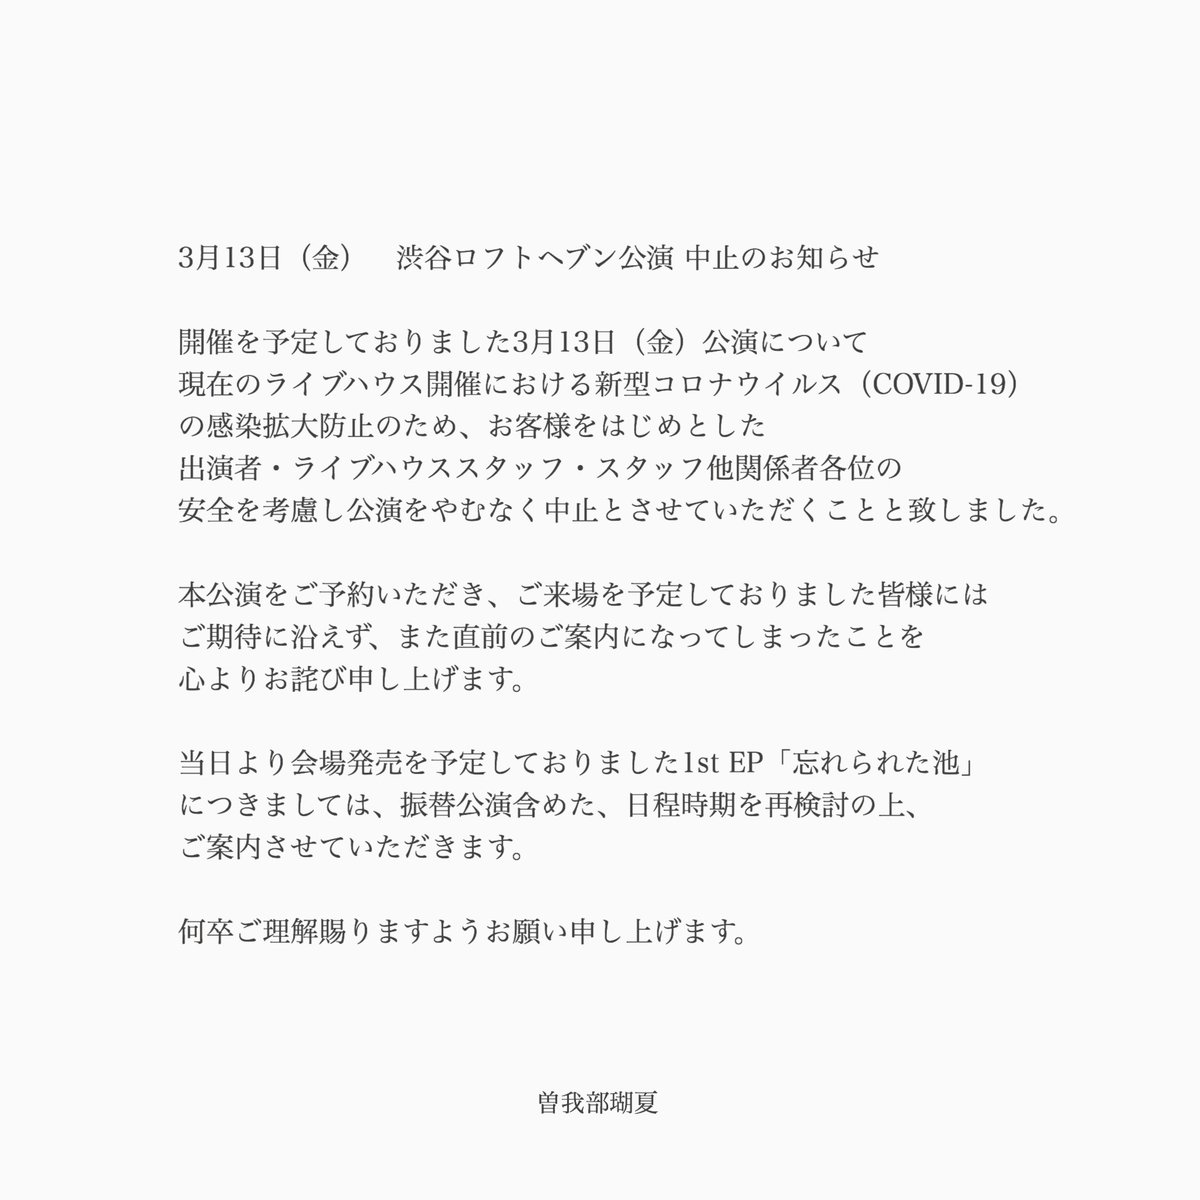 曽我部瑚夏official En Twitter 3月13日 渋谷ロフトヘブン公演中止のお知らせ T Co M2iy3w6uhc Twitter